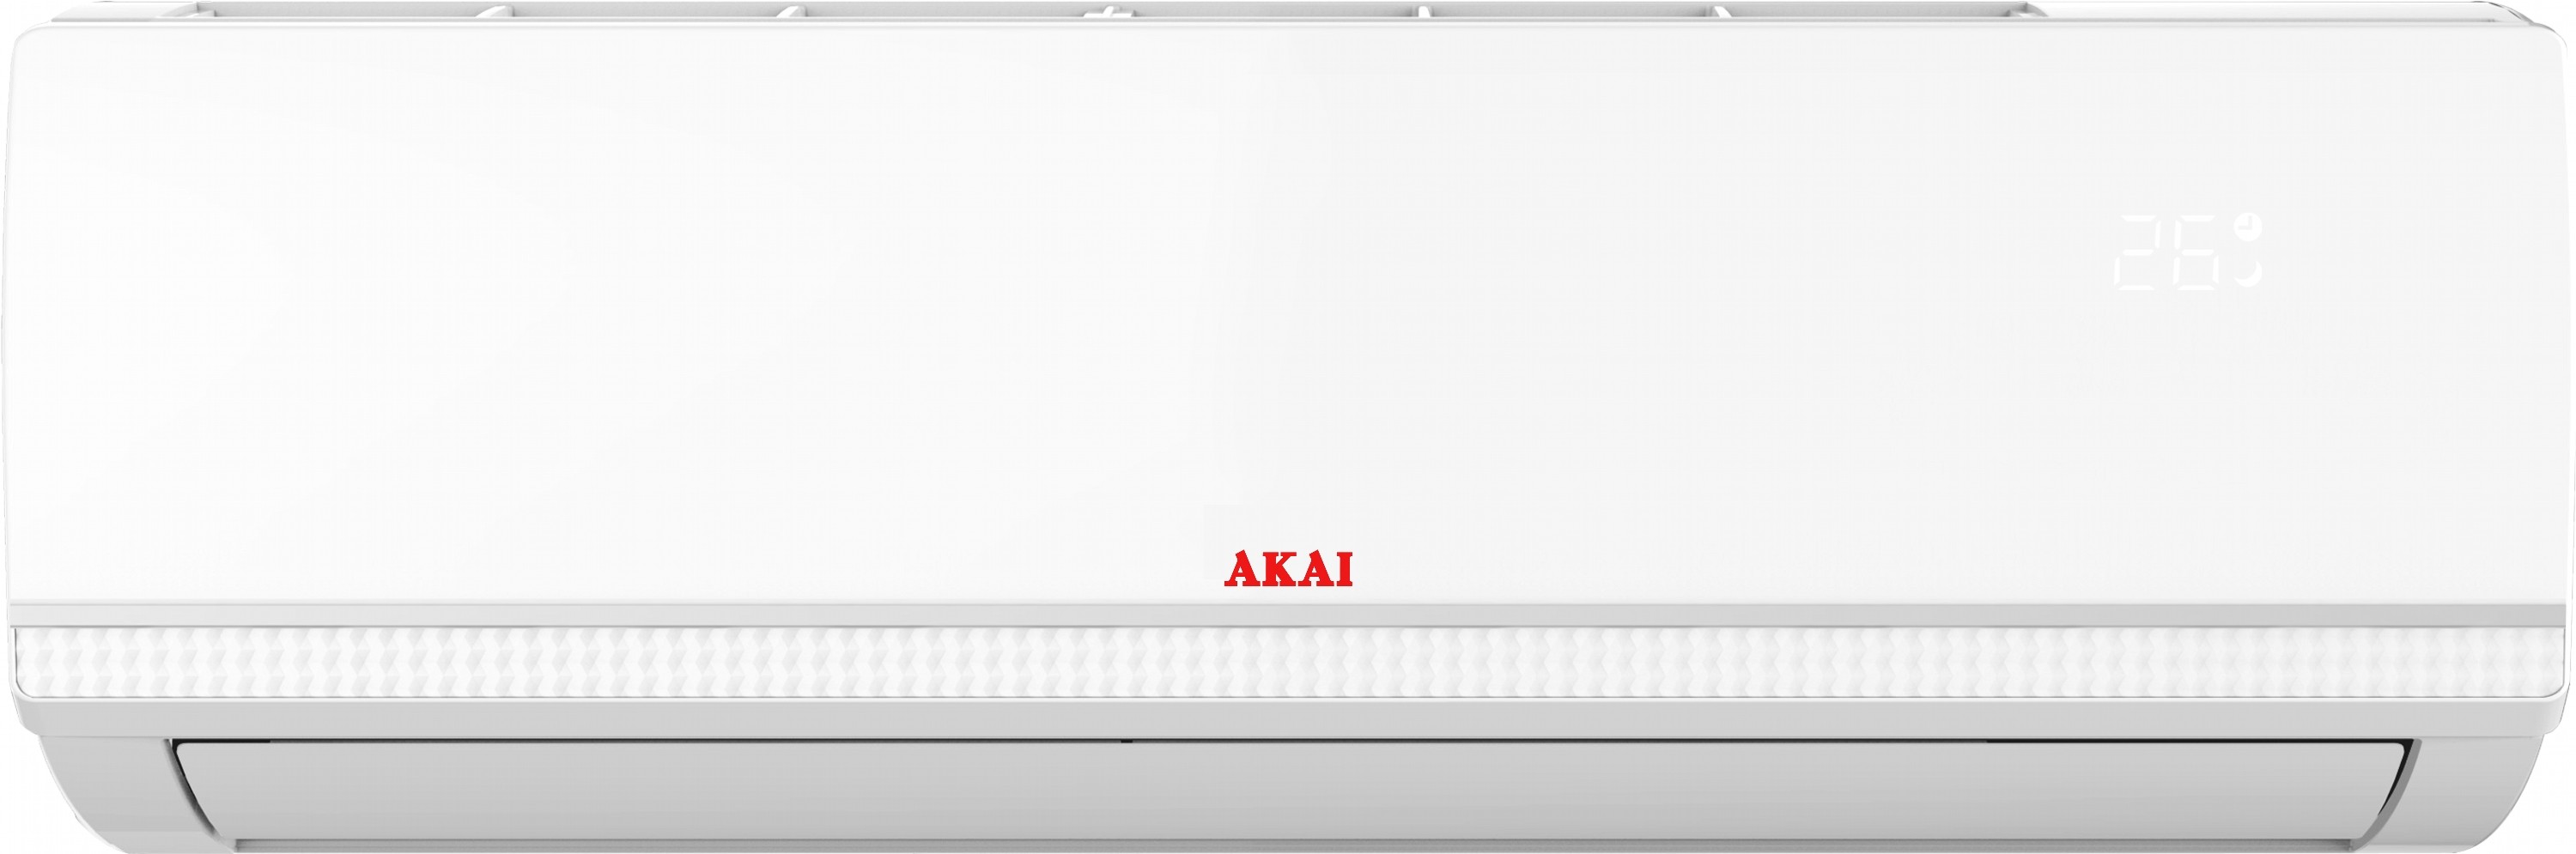 Кондиционер сплит-система Akai AK-AC9010-IN цена 11499.00 грн - фотография 2